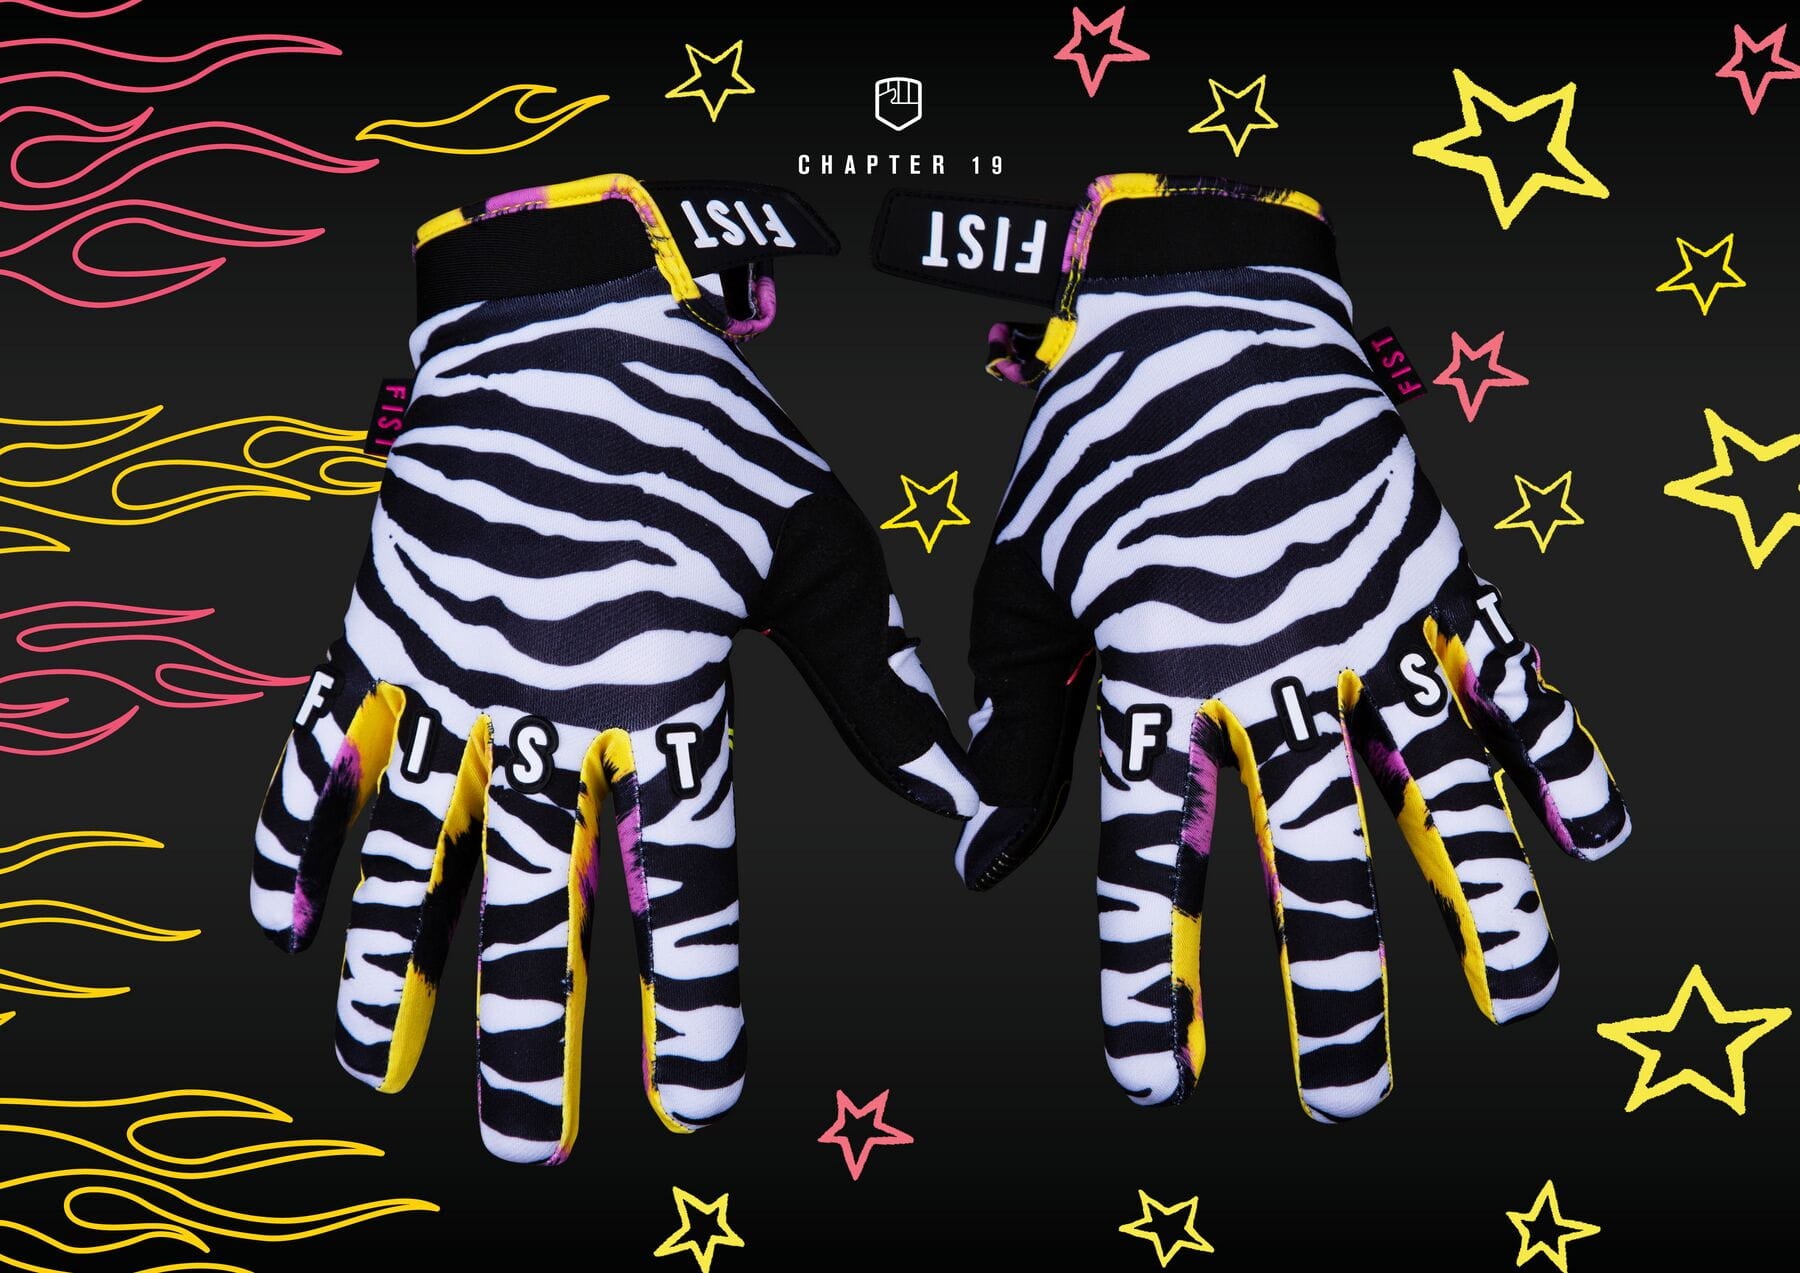 Fist Gloves Zebra